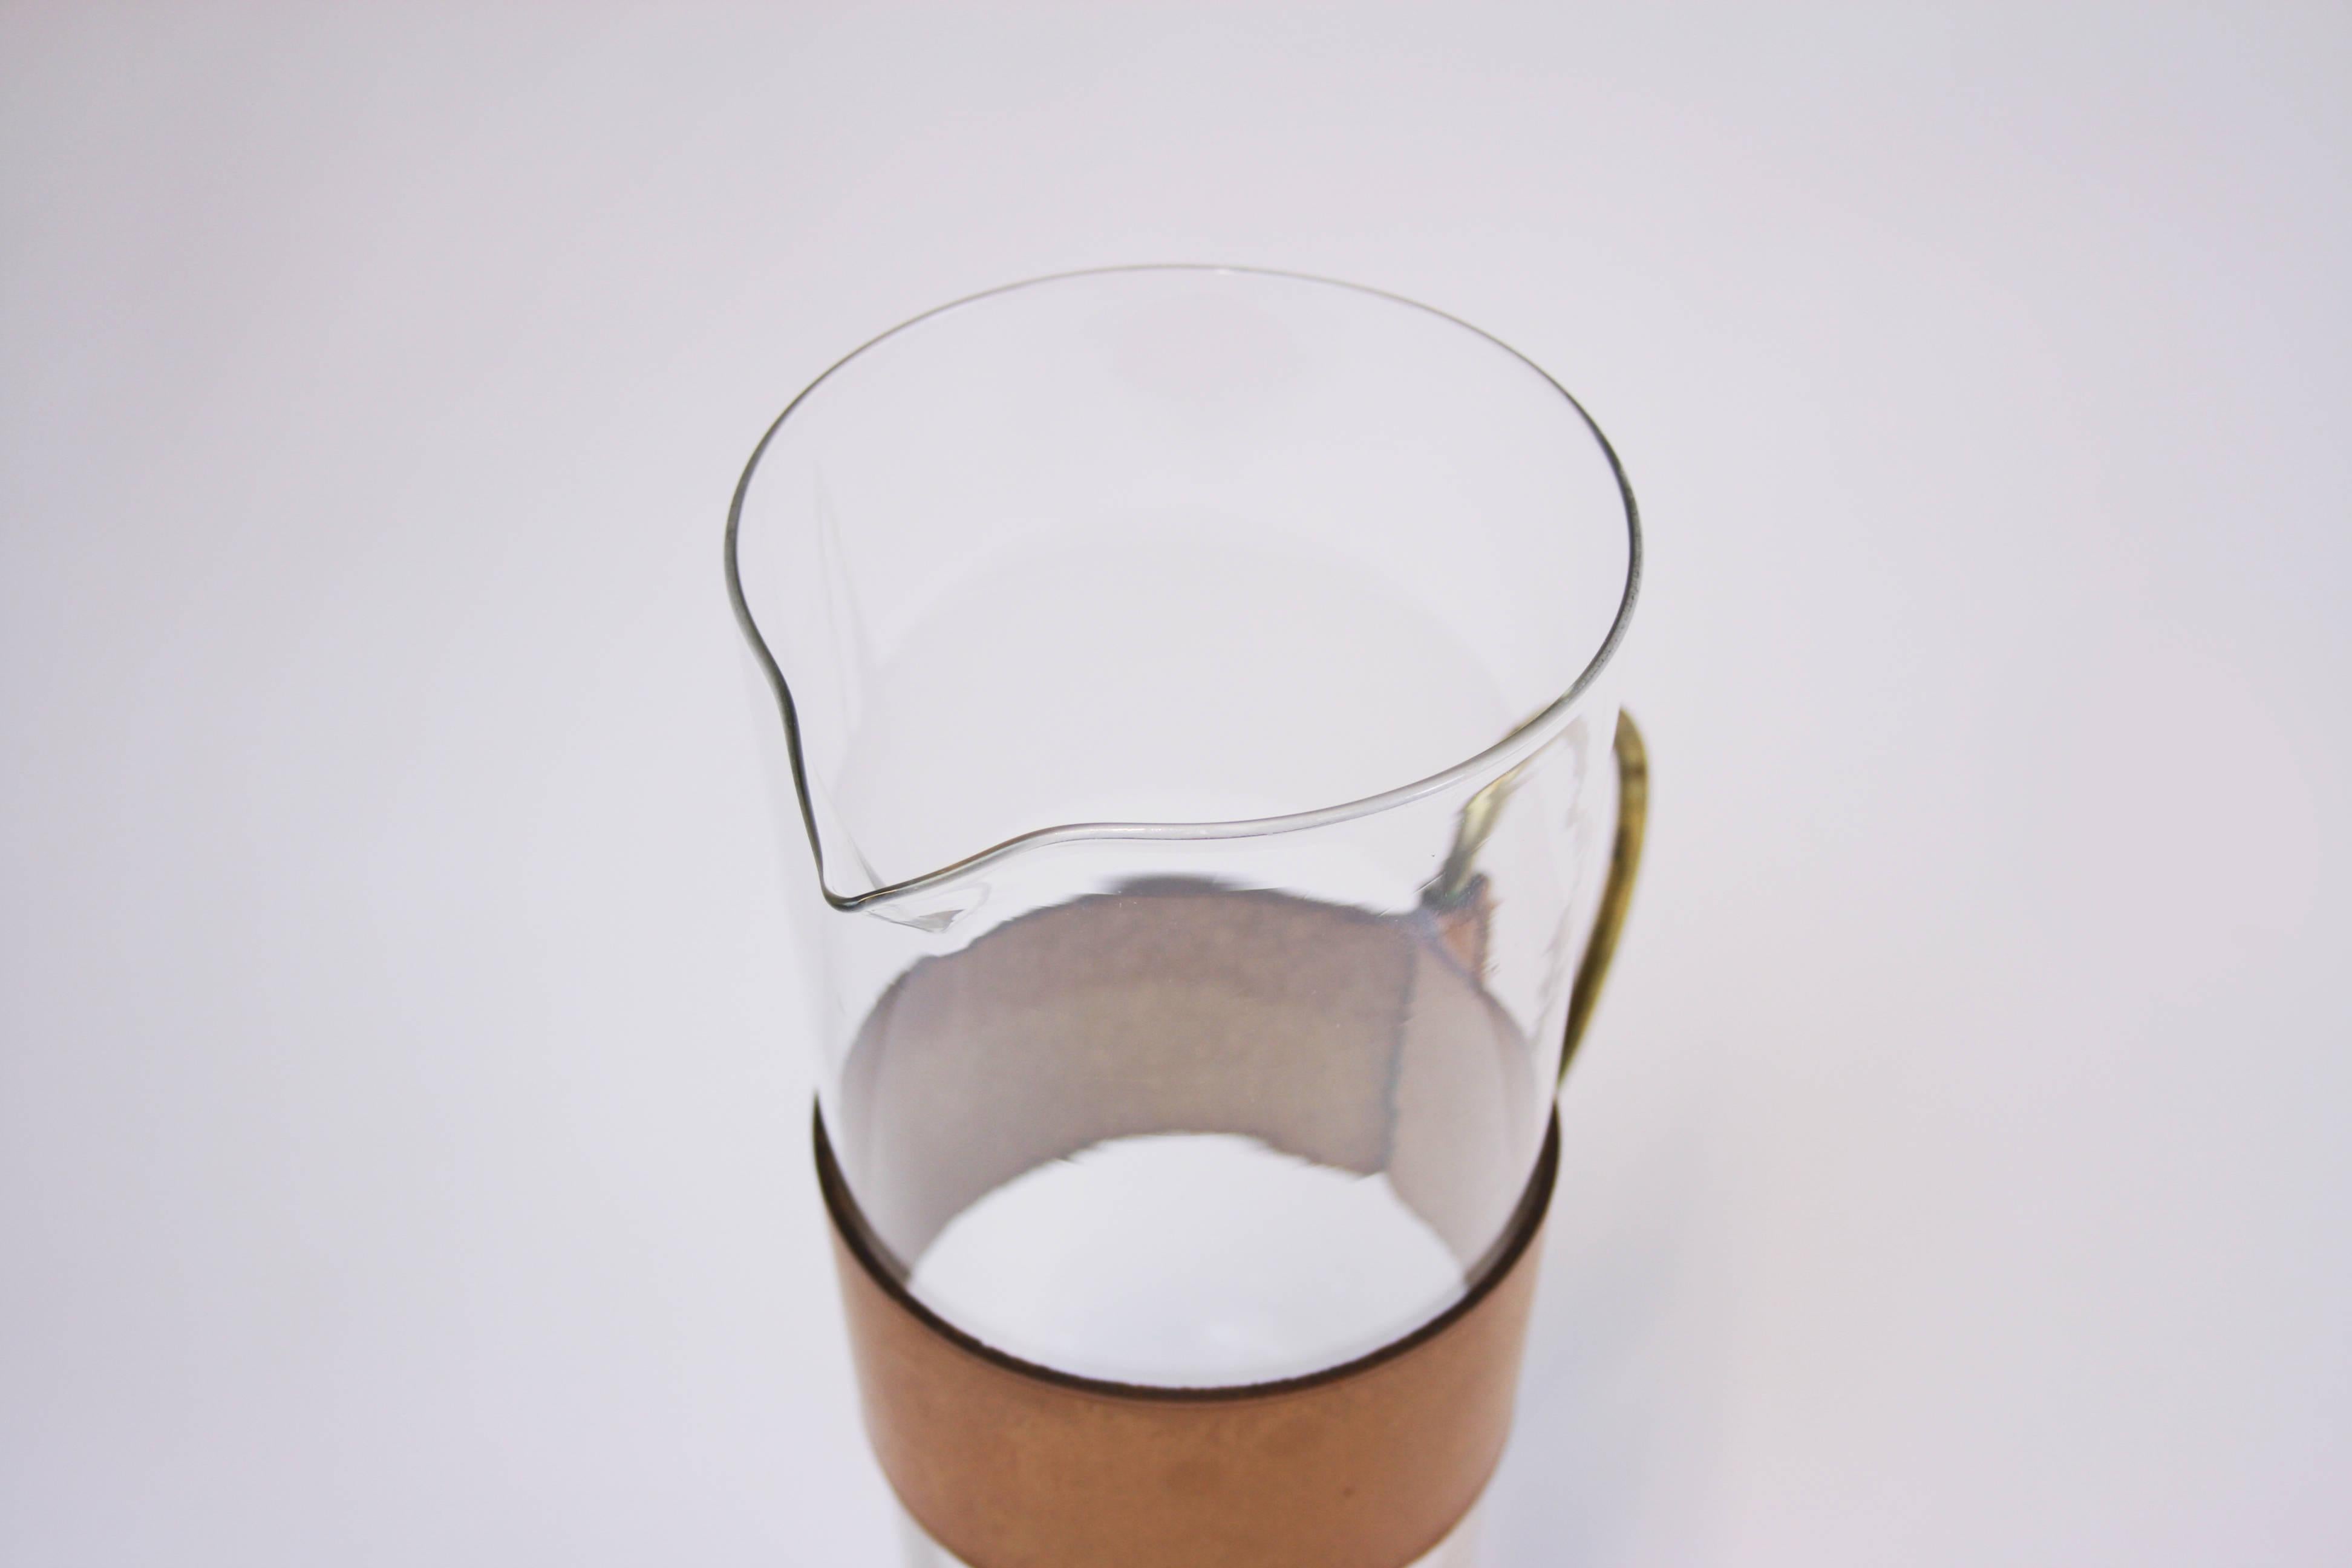 Krug oder Wasserkrug Messing-Leder-Glas Werkstätte Carl Auböck Wien 1950er Jahre. Ein seltenes und kostbares Objekt in hervorragendem Originalzustand, das ein Schmuckstück für jede Sammlung werden kann. Das in den späten 1950er Jahren hergestellte